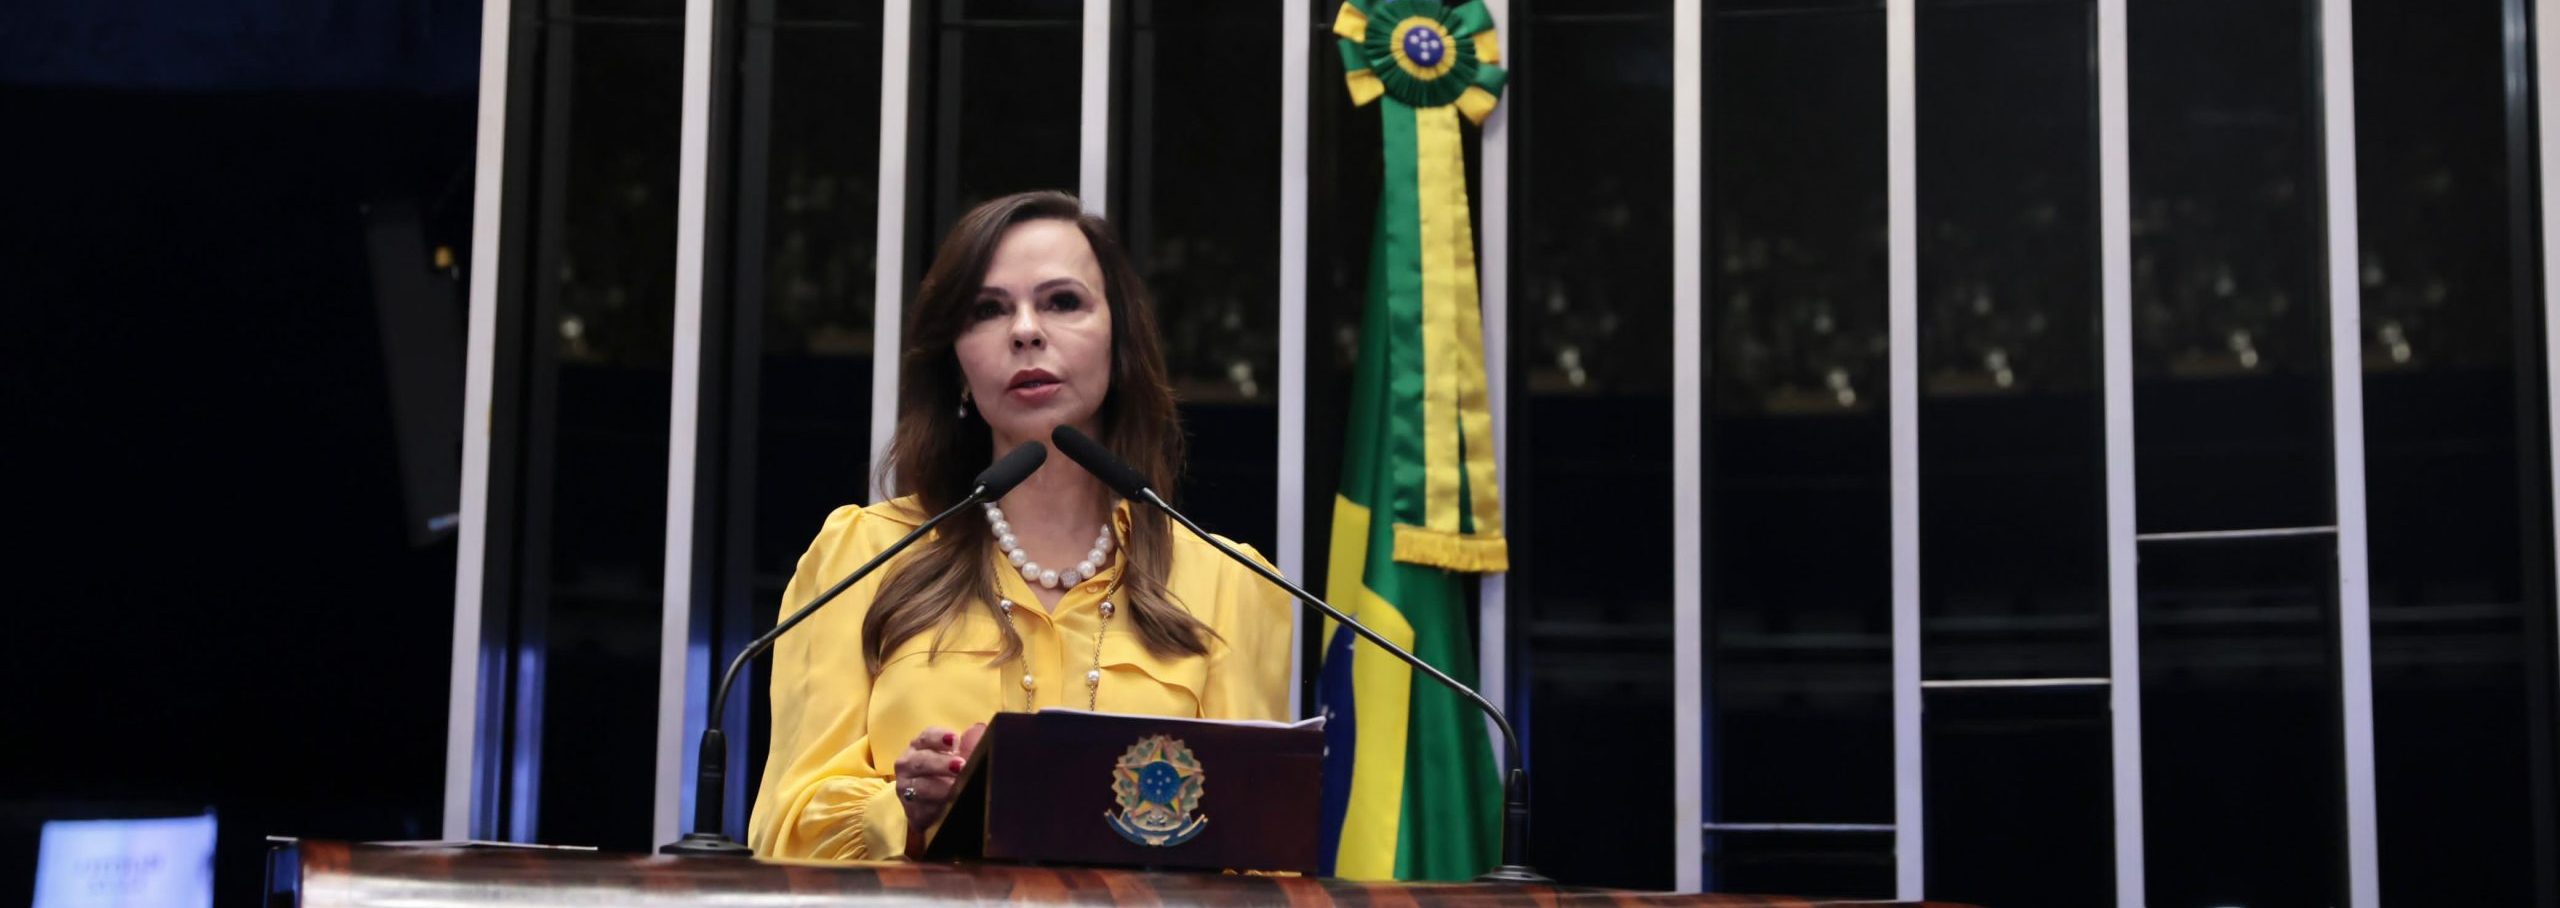 Senadora Professora Dorinha (UNIÃO-TO) (Fotografia: Sidney Lins Jr.)